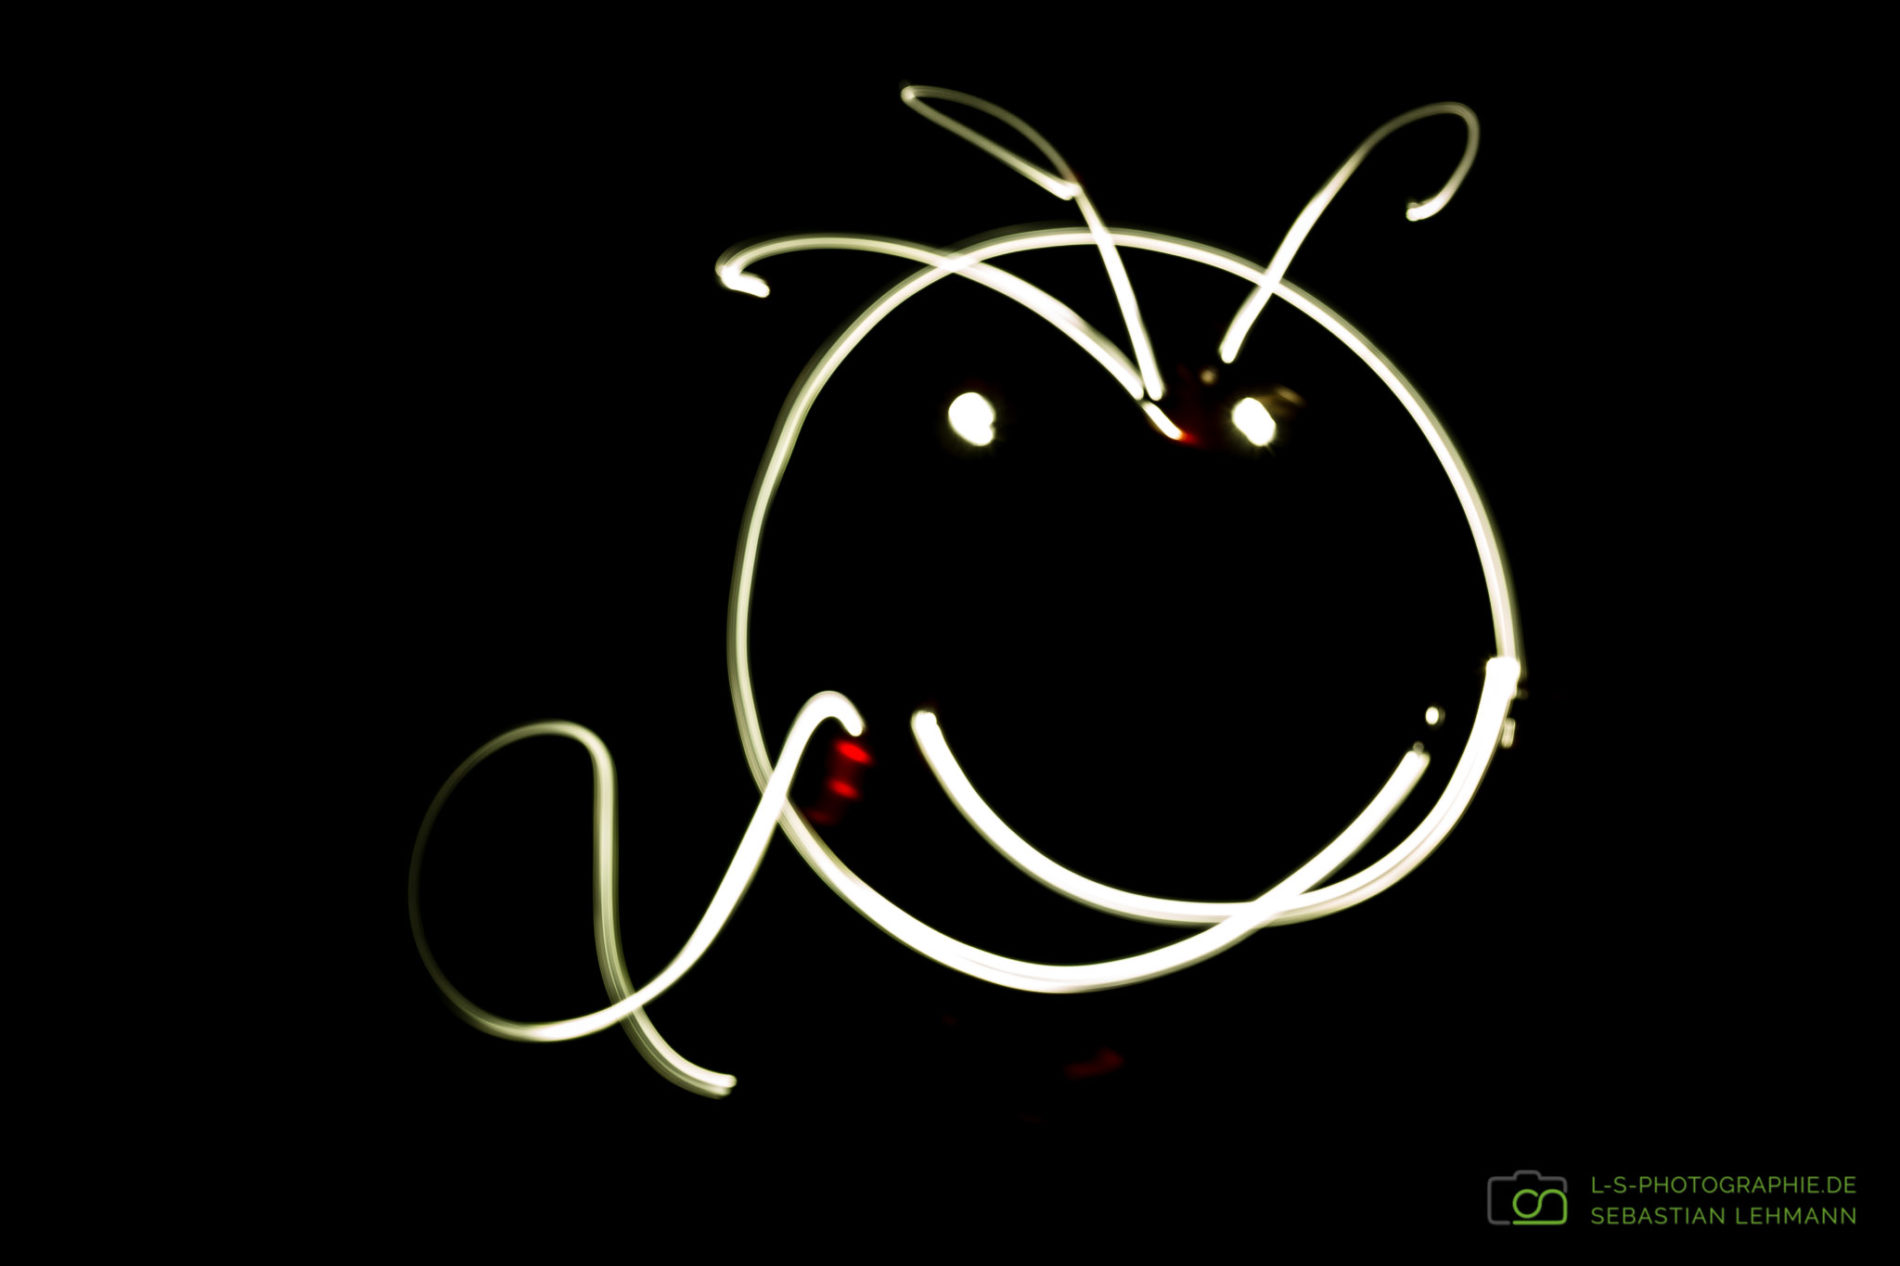 Einfache Lichtmalerei - Ein gezeichnetes Smiley